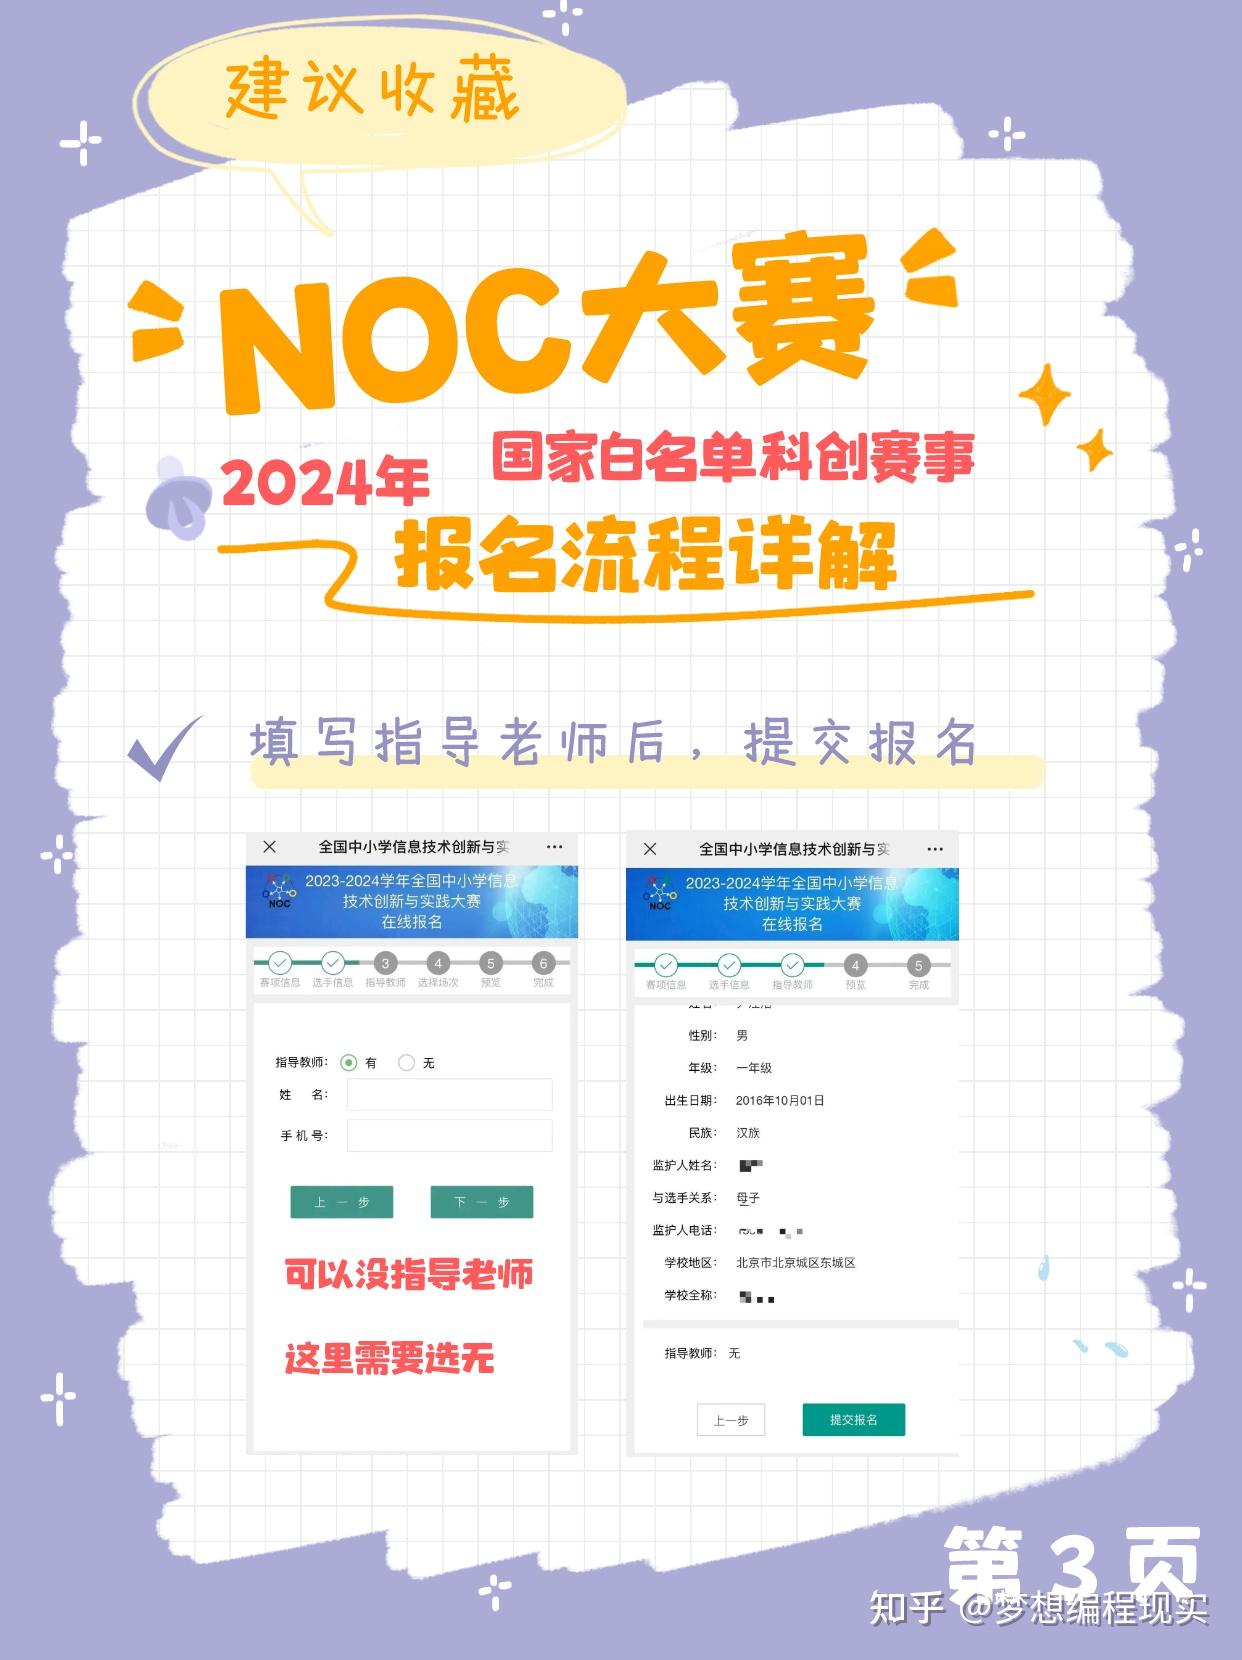 2021-2022学年NOC大赛 “创新思维编程”赛项收官，数百位选手晋级全国决赛_能力_低年级_编程